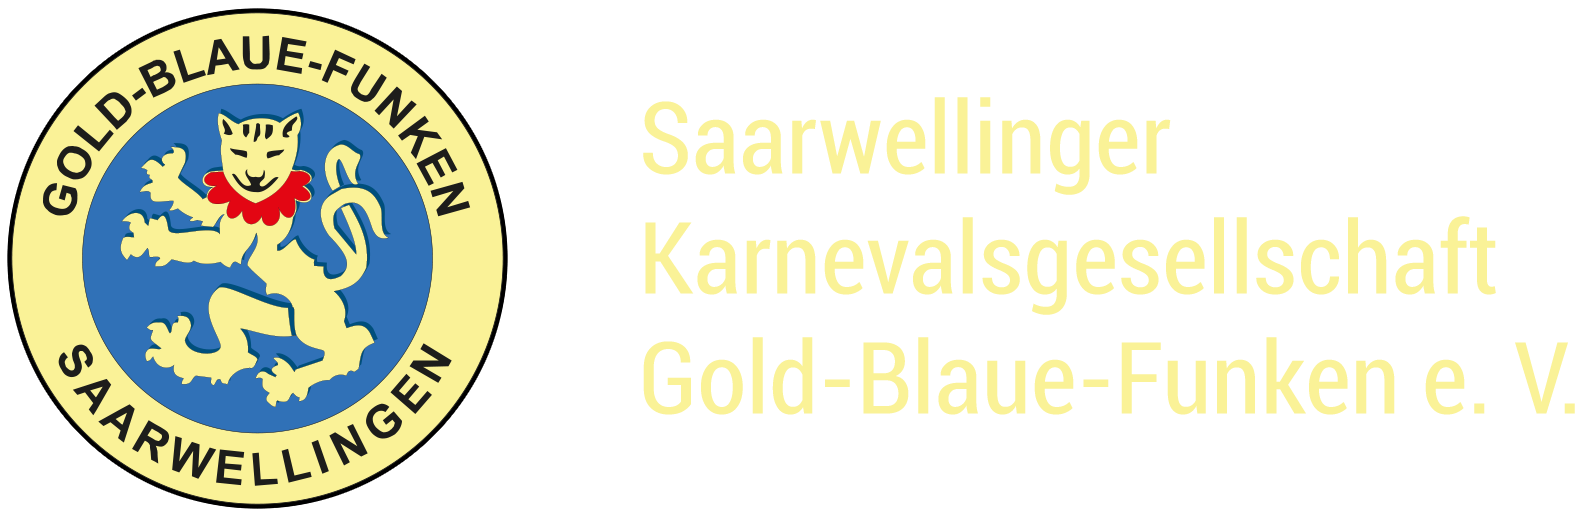 Saarwellinger Karnevalsgesellschaft Gold-Blaue-Funken e. V.